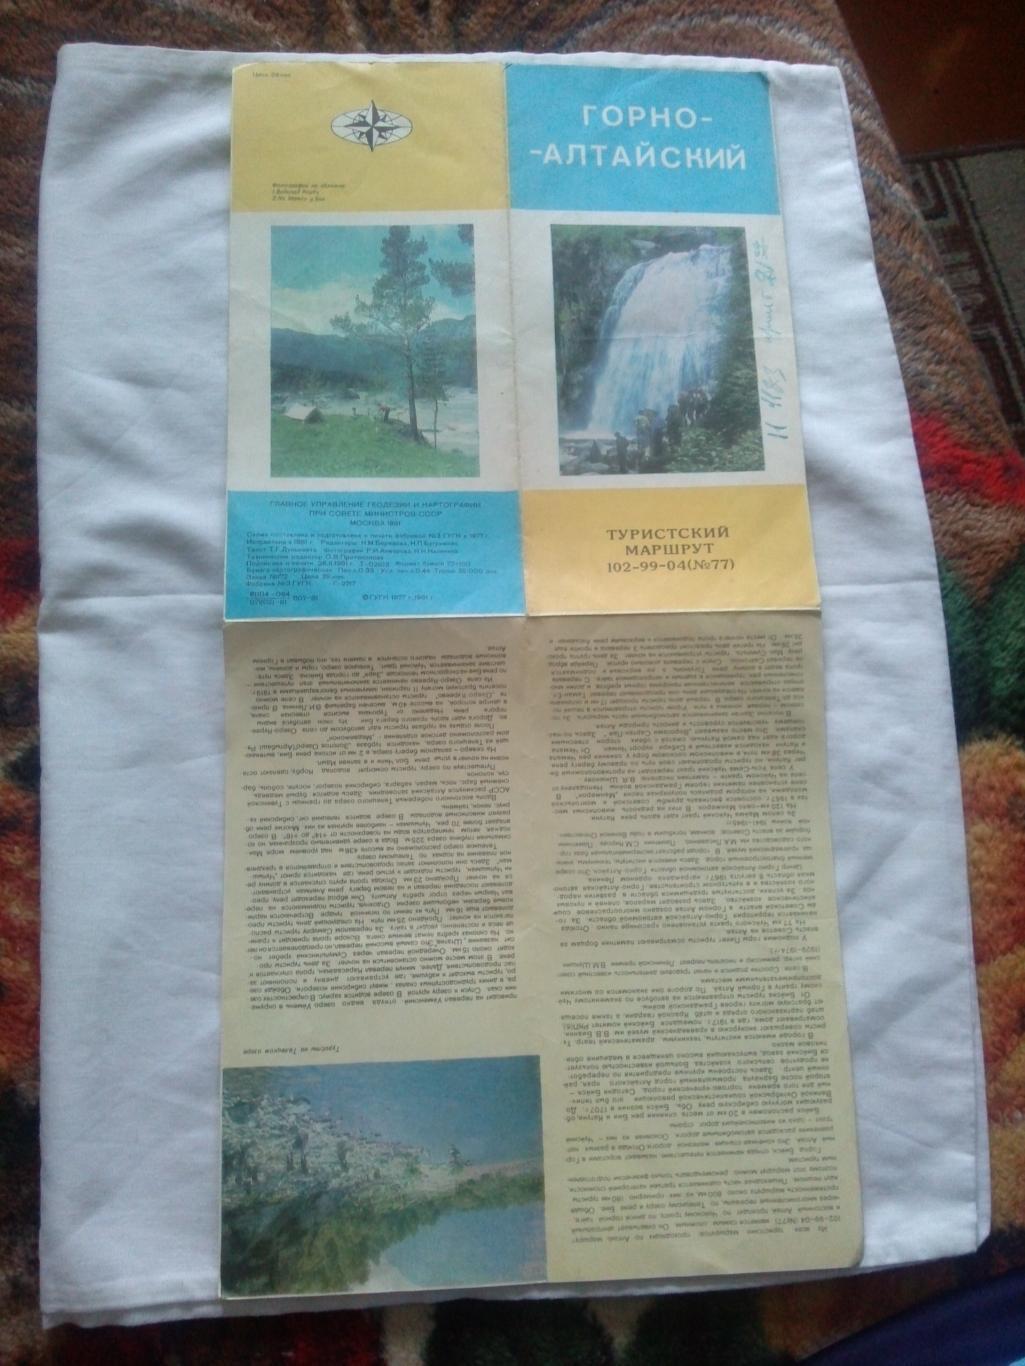 Карта (путеводитель) : Горно - Алтайский 1981 г. (туристский маршрут) Туризм 5